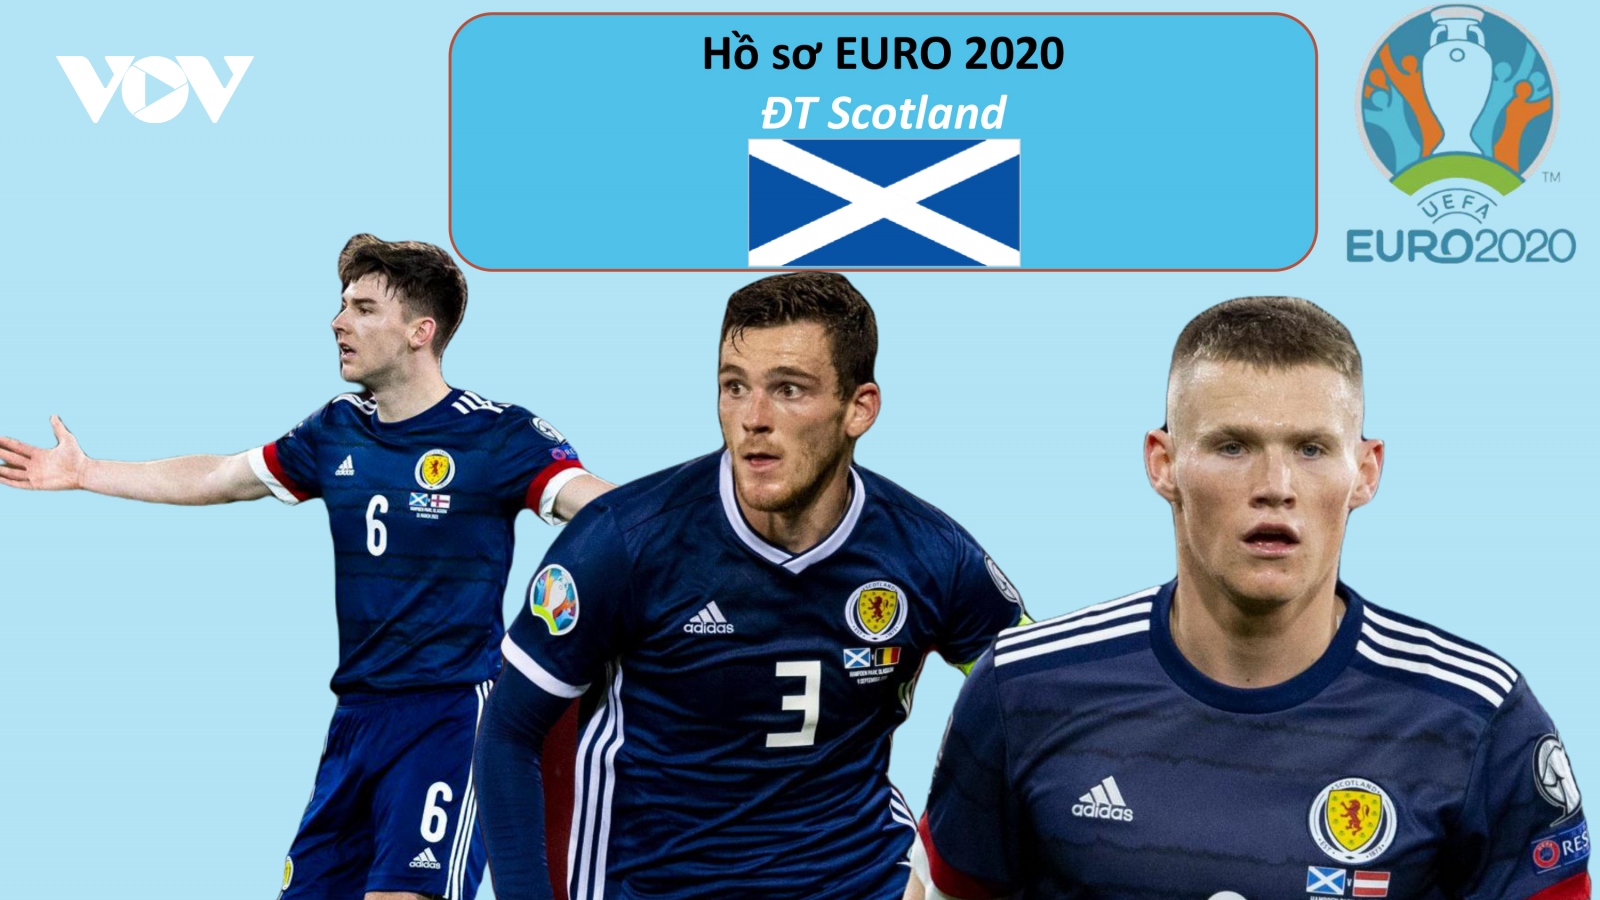 Hồ sơ các ĐT dự EURO 2020: Đội tuyển Scotland